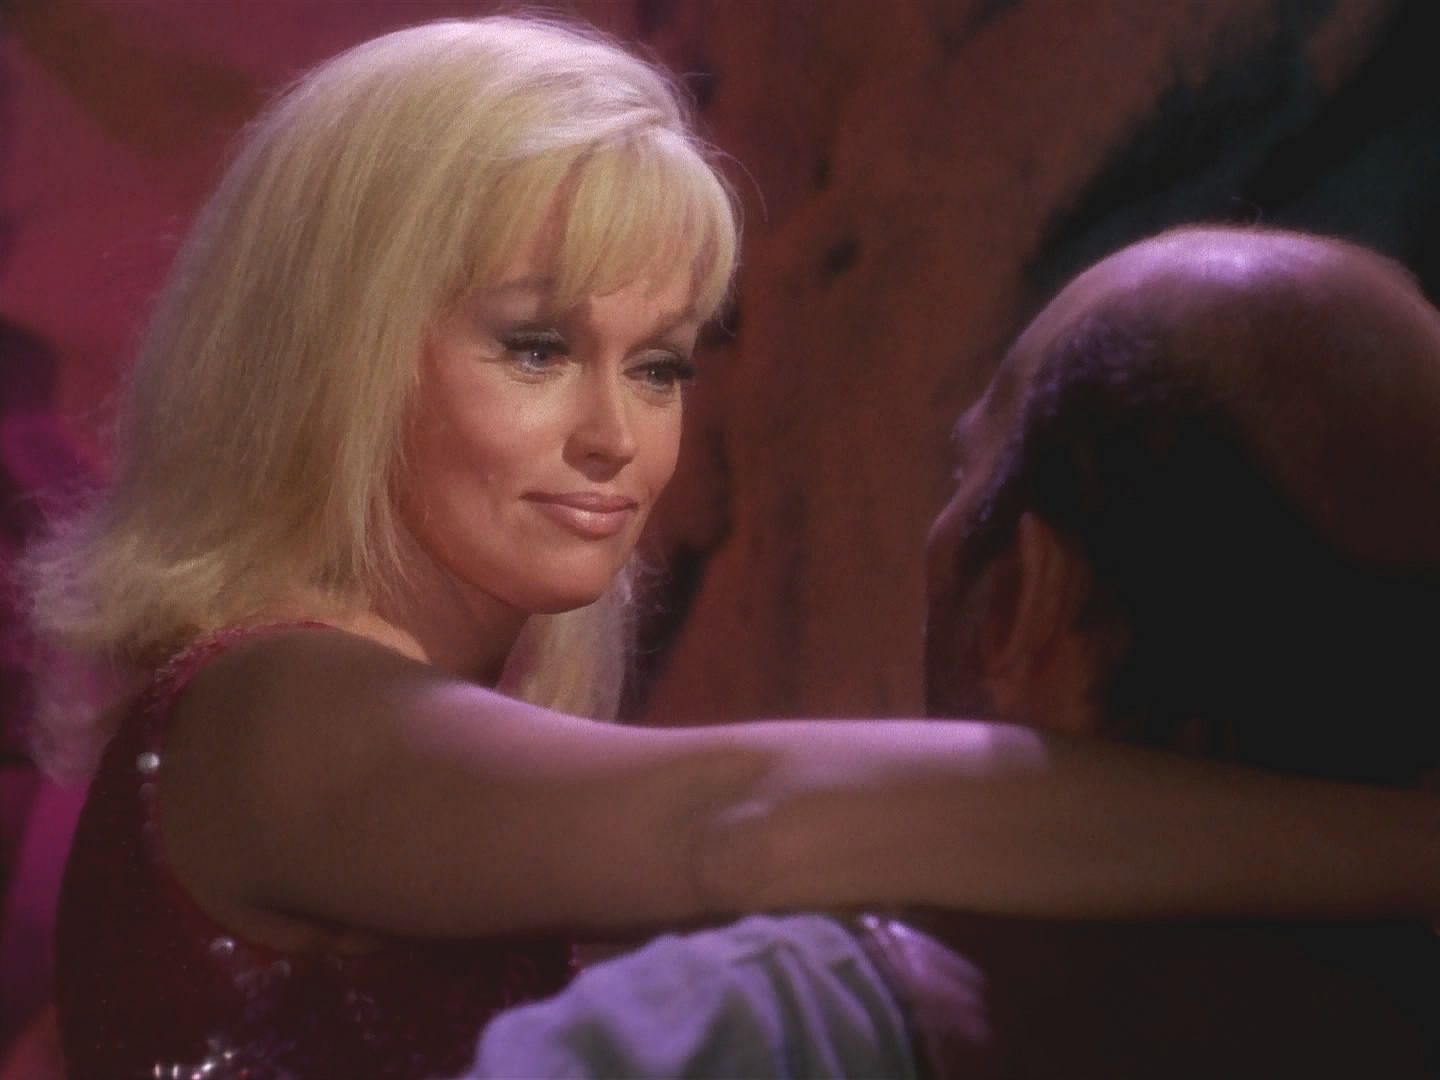 Eve si v zoufalství vezme drogu, kterou Kirk přinesl, a náhle je opět krásná. Teprve pak se dozví, že si vzala obyčejnou želatinu. Stačilo jen si věřit. Zůstává a Kirk se vrací na loď s krystaly.